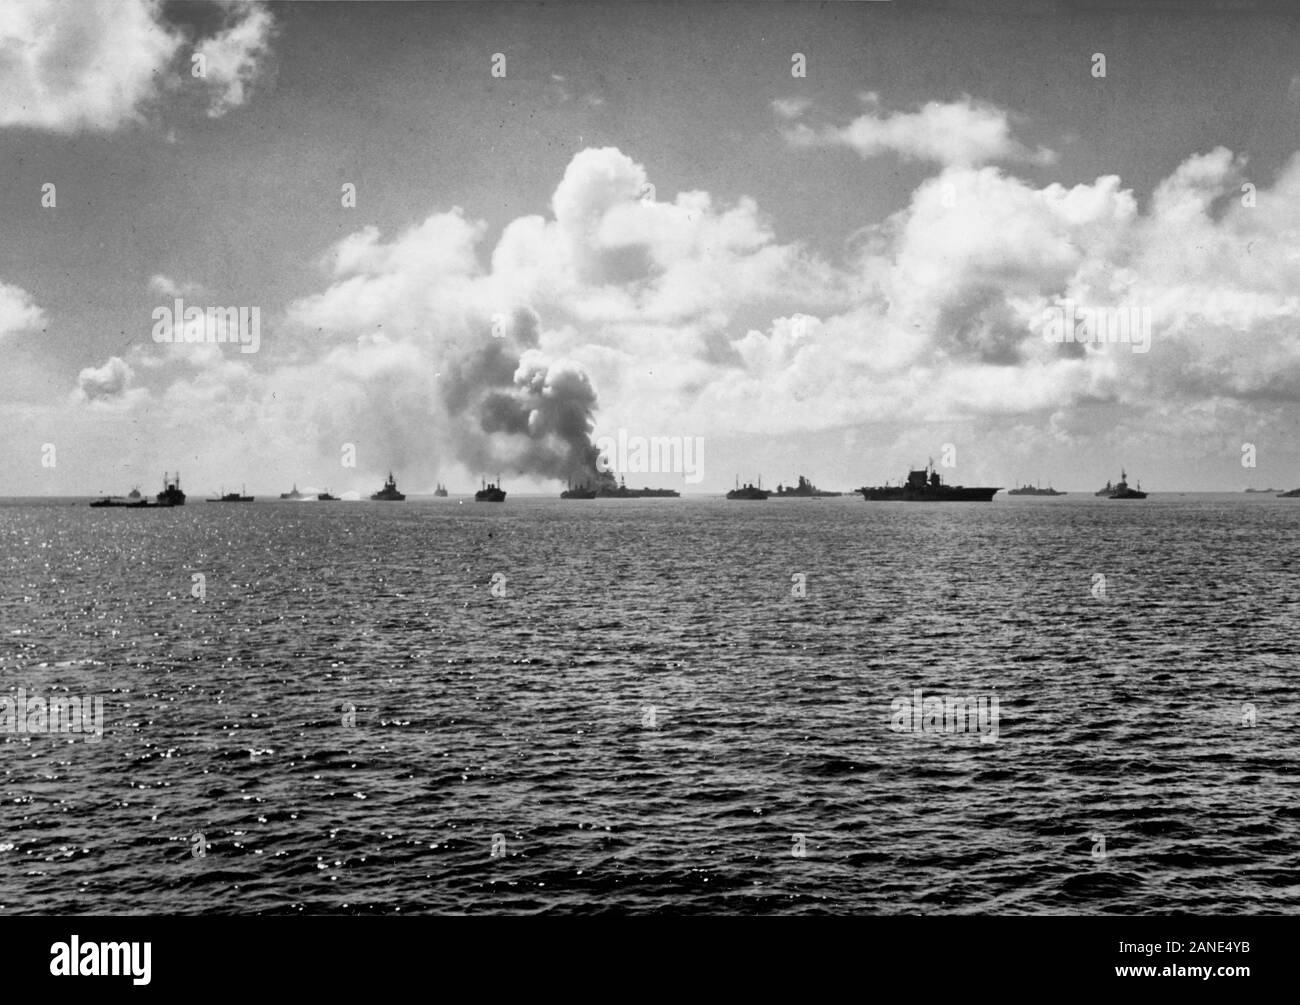 Bikini Atoll bomba atomica prove, 1946: Vista della flotta di destinazione immediatamente dopo il 'in grado' raffica di antenna il 1 luglio 1946. La portaerei USS Saratoga (CV-3) è nel centro di USS Indipendenza (CVL-22) che brucia a sinistra-centro. L'ex-giapponese corazzata Nagato è tra di loro. Nota la nave a sinistra accanto alla nave da guerra USS Pennsylvania (BB-38) cercando di lavare giù la radioattività con (contaminati) acqua dalla laguna. Foto Stock